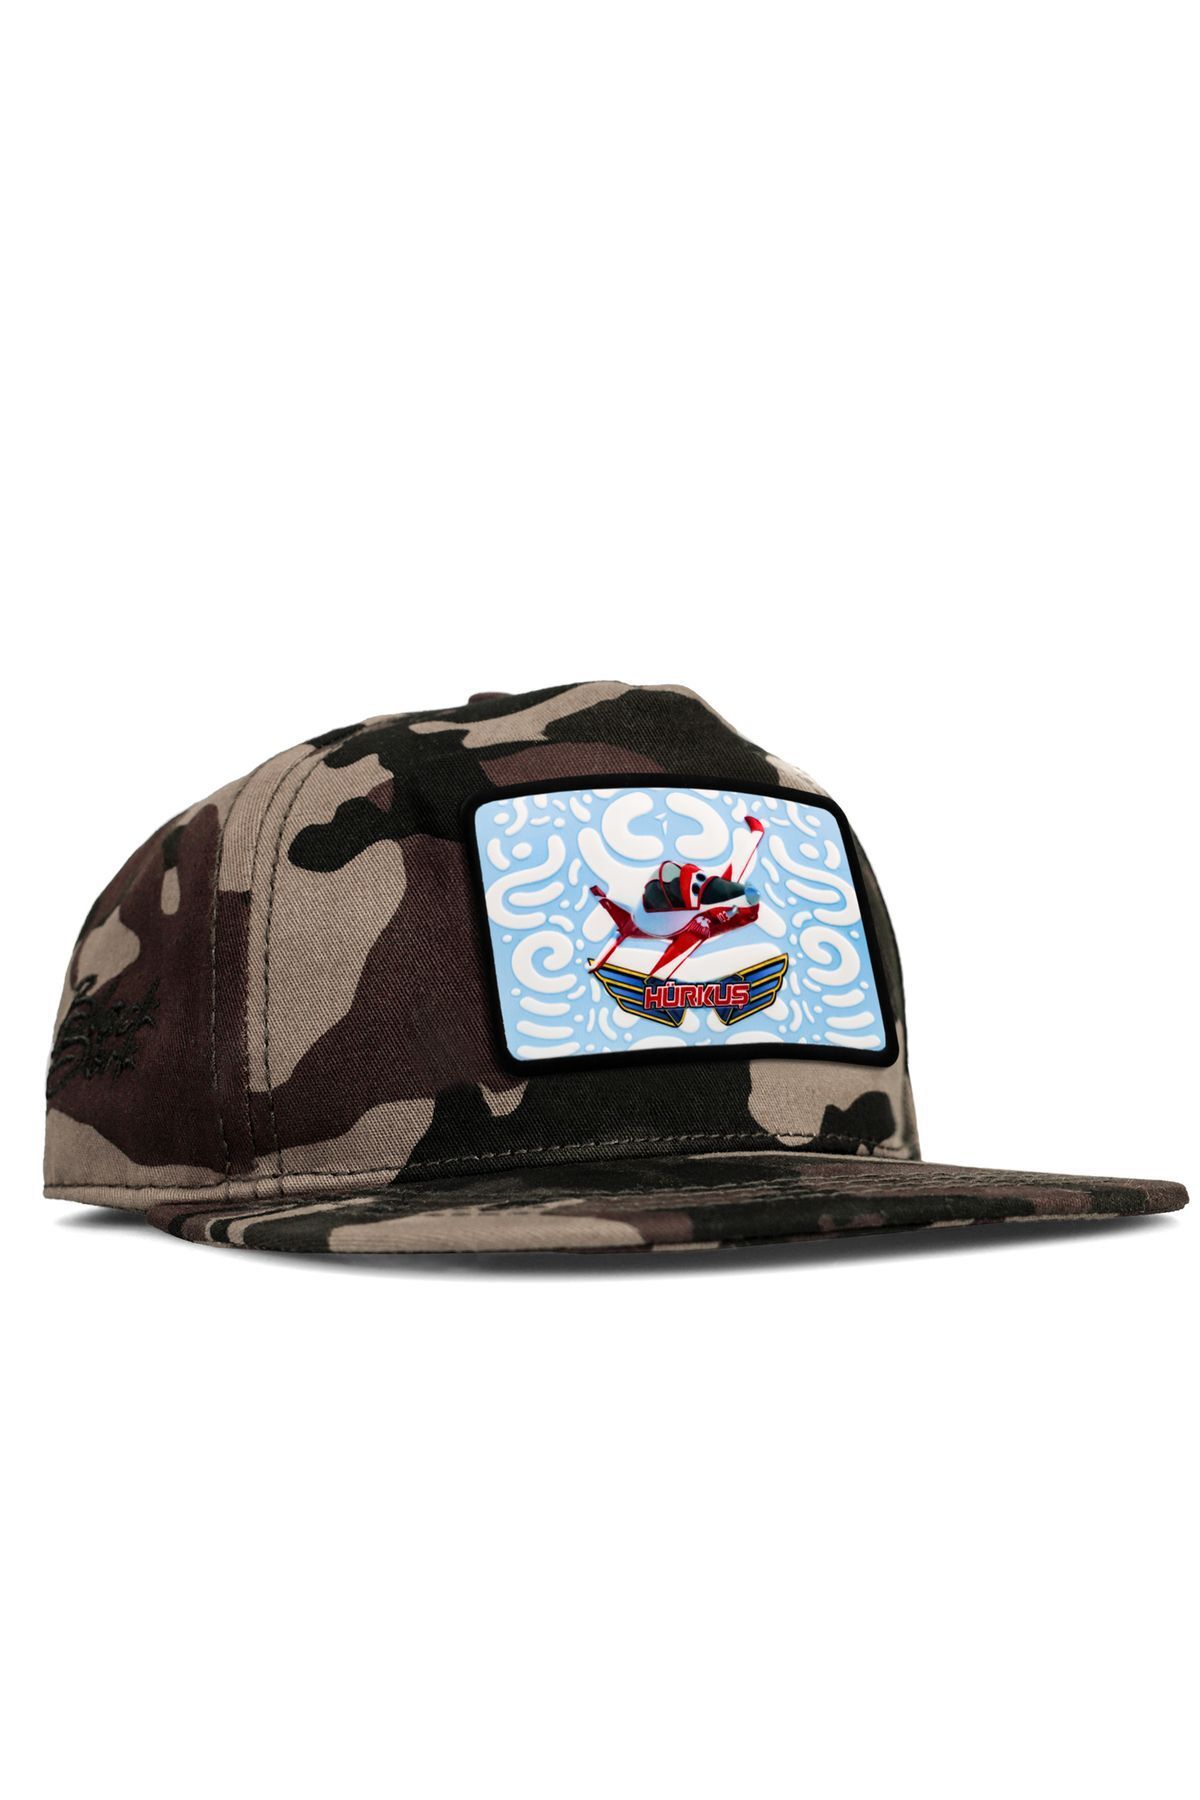 BlackBörk V2 Hip Hop Kids Bulut Hürkuş Lisanlı Kamuflaj Çocuk Şapka